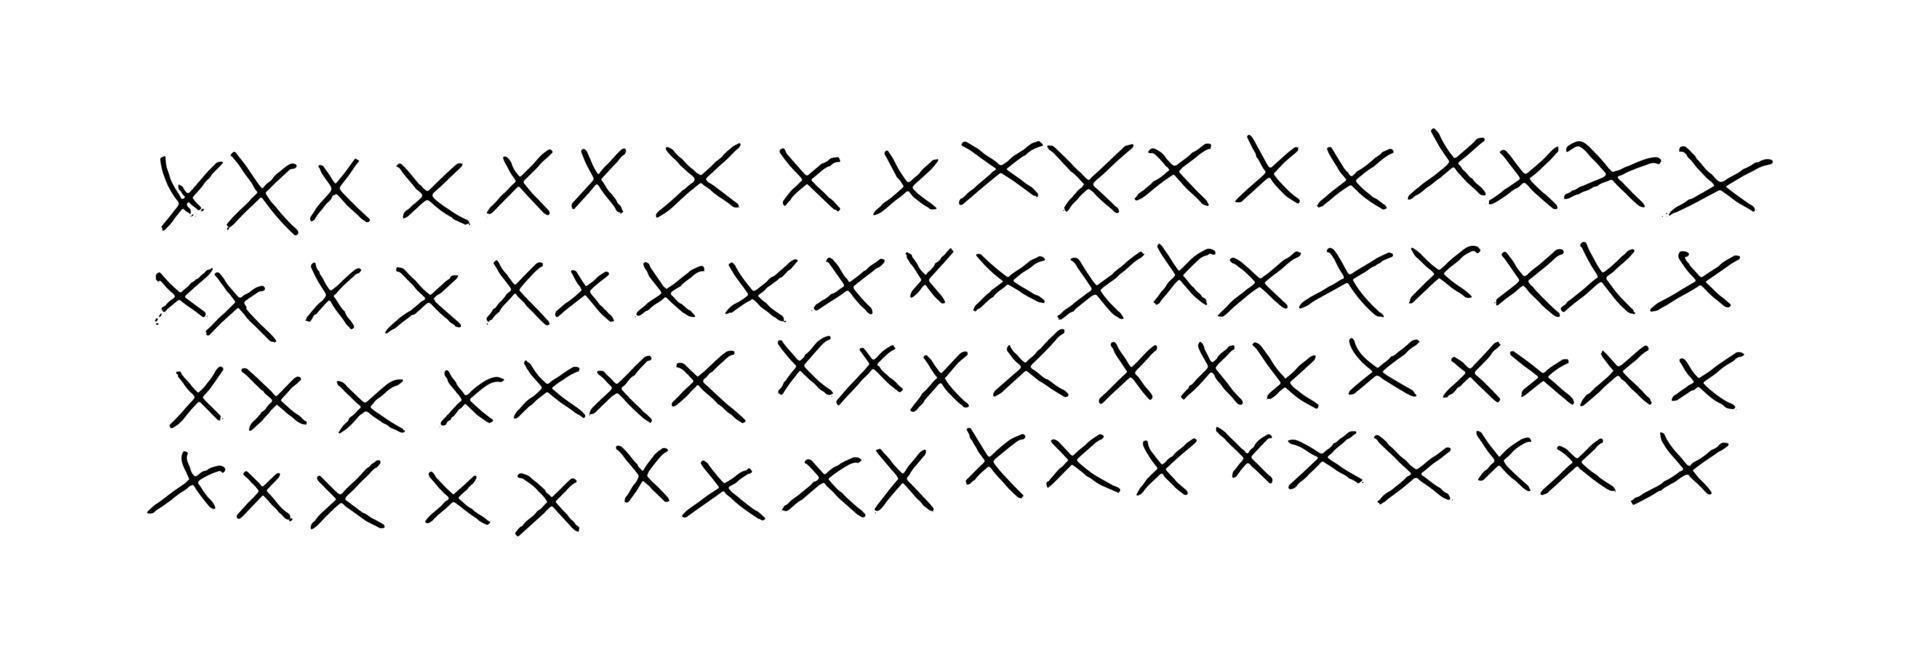 rangées de croix de griffonnage. traits de griffonnage déchiquetés dessinés à la main. texture de fond horizontale isolée sur blanc. vecteur